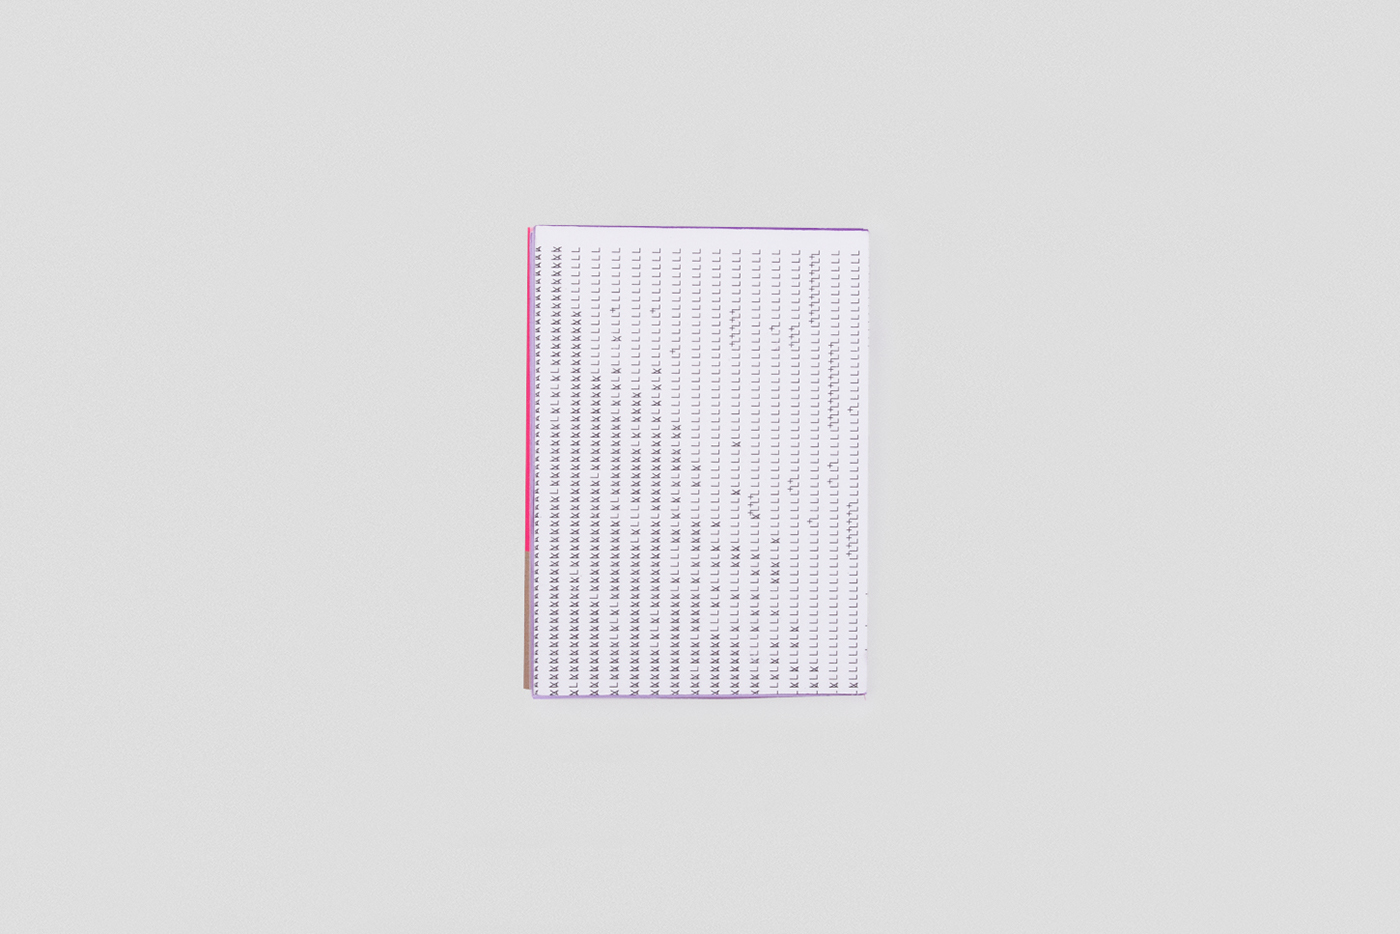 onebookaweek und fertig typewriter pink neon word Analogue